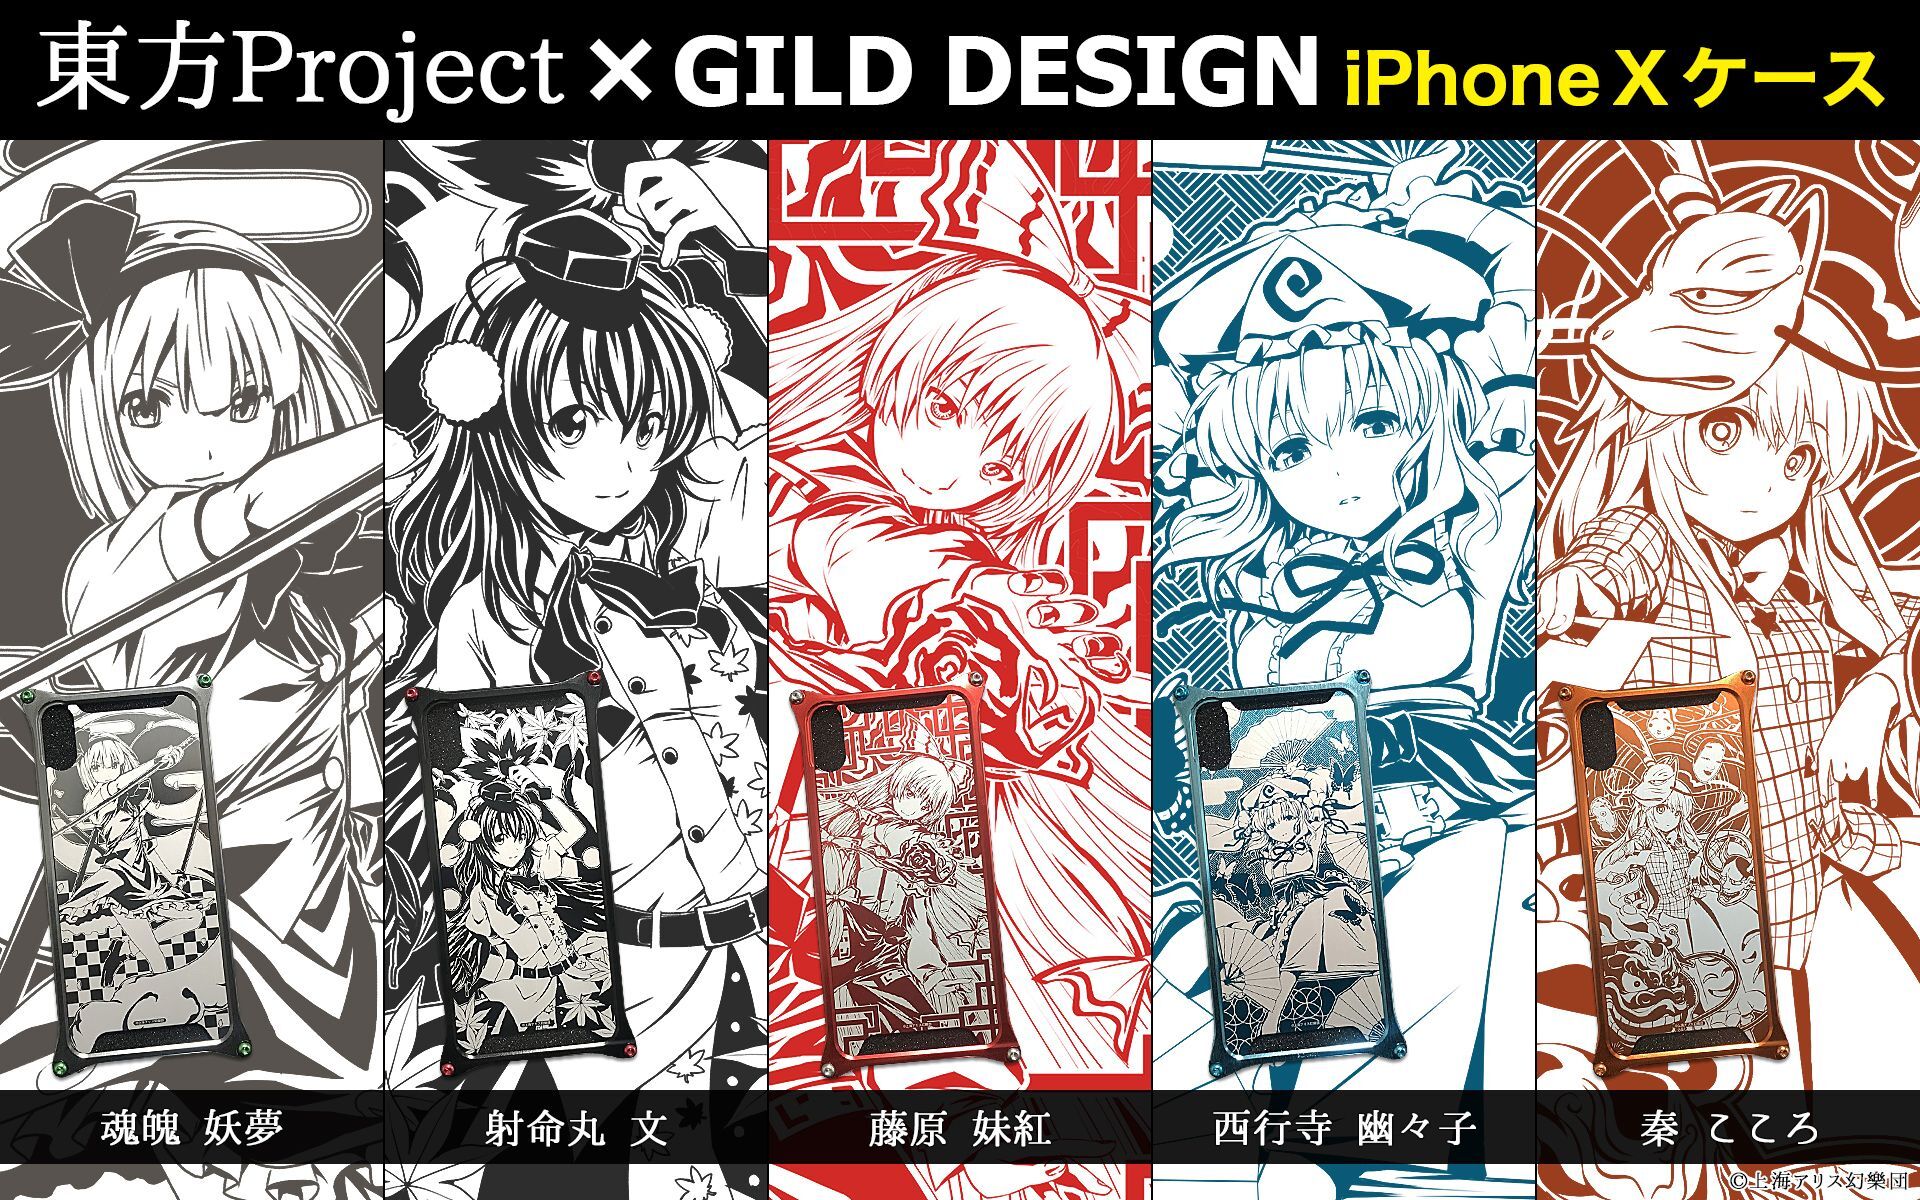 東方project Gild Design Iphone X対応ケース第2弾 6月8日正午より Ud Premium にて予約開始 株式会社アップドラフトのプレスリリース